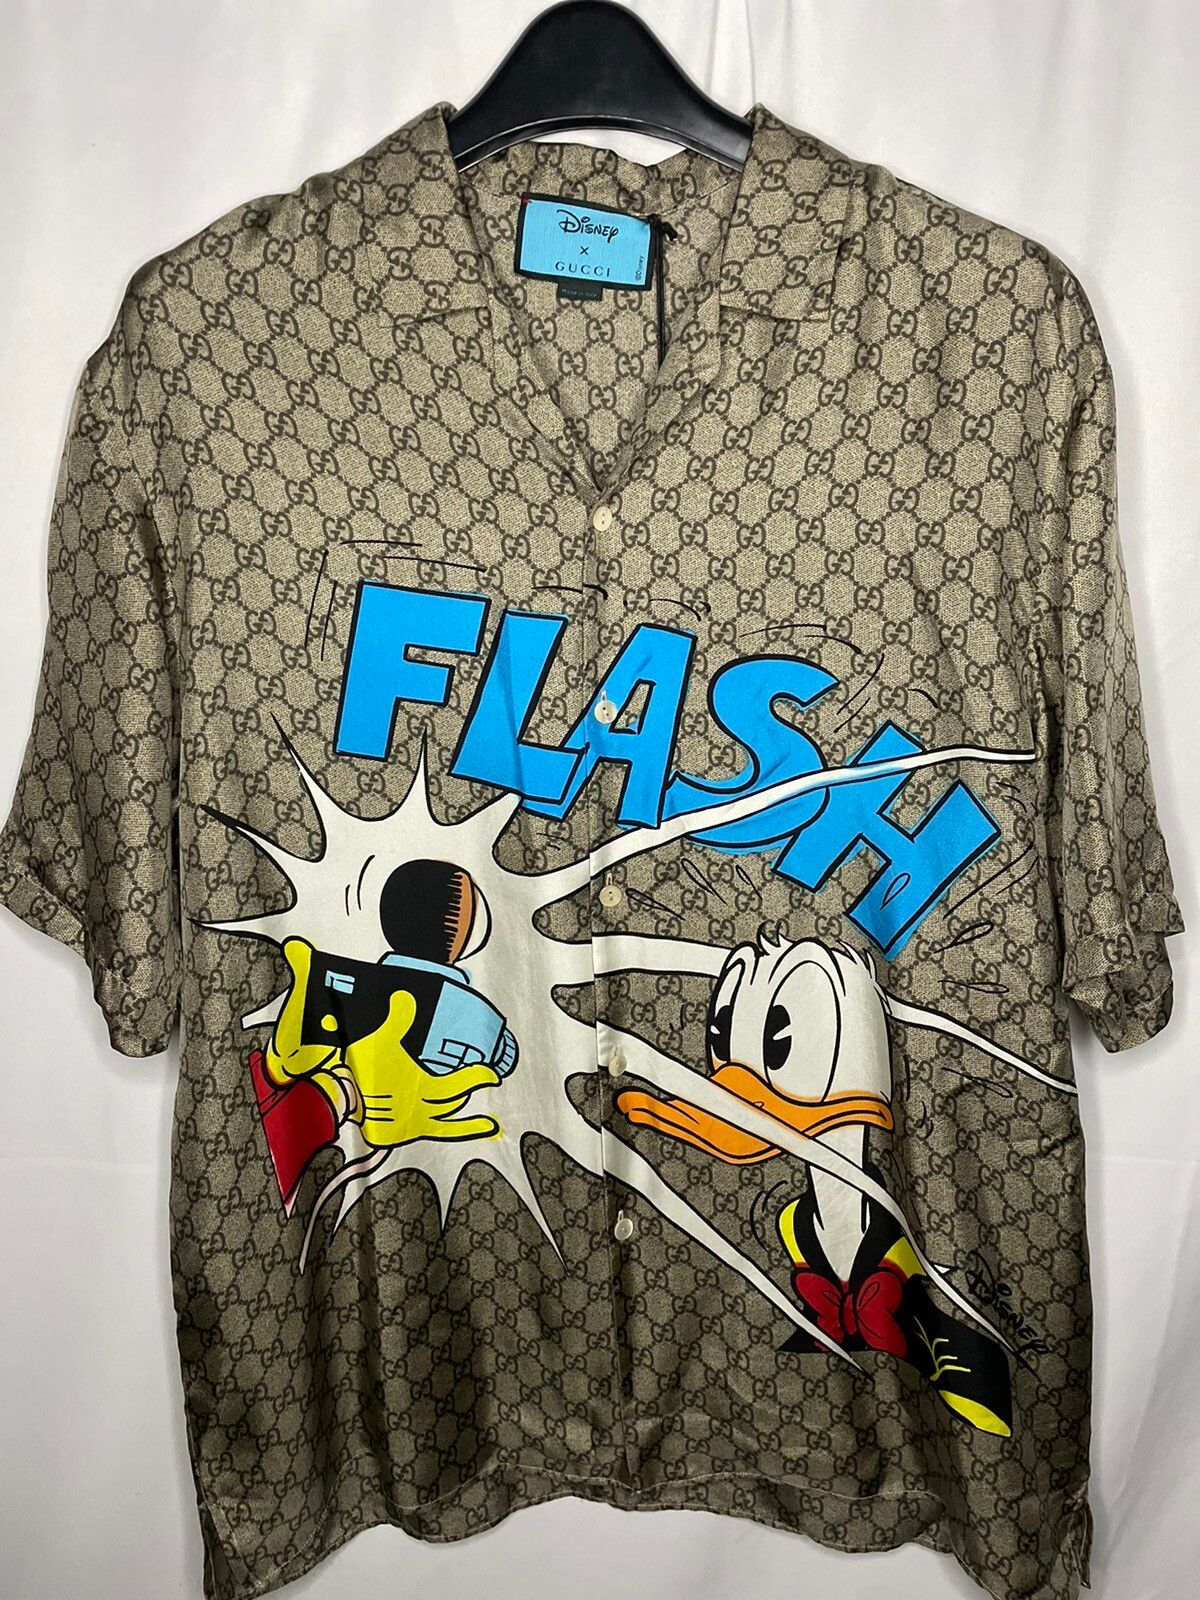 Gucci X Disney Donald Duck GG silk shirt